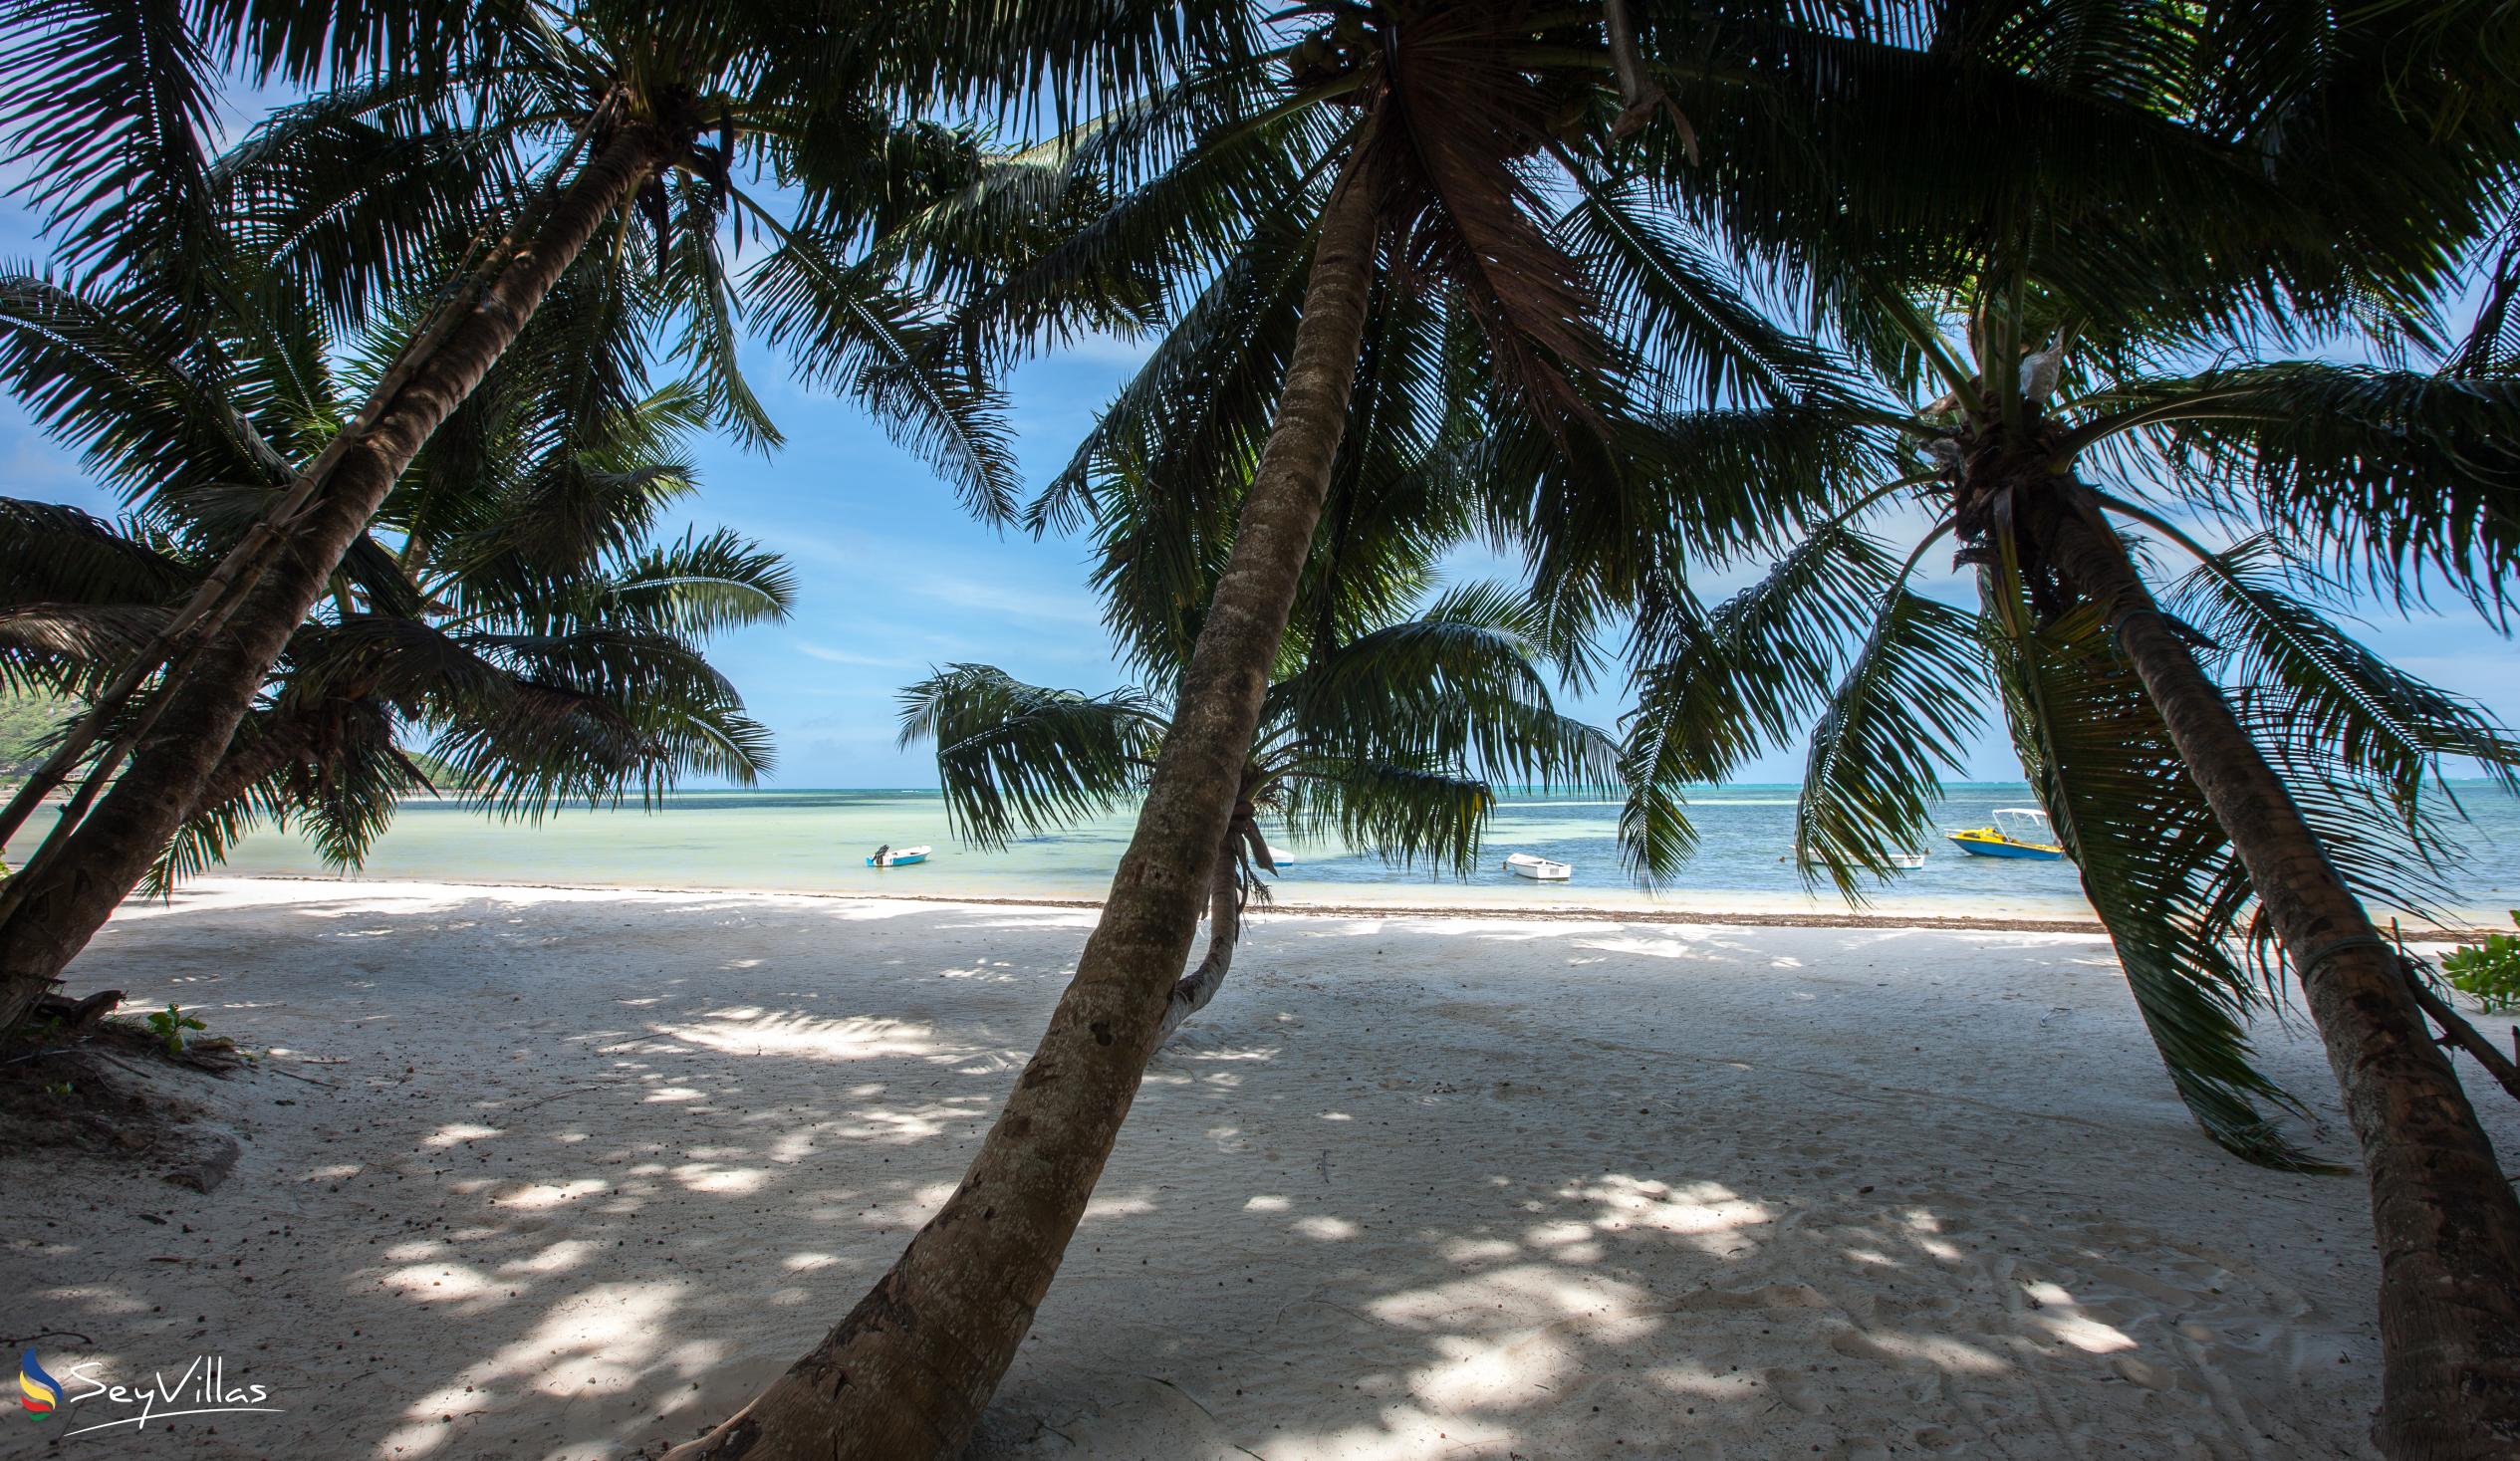 Foto 67: Le Relax Beach Resort - Strände - Praslin (Seychellen)